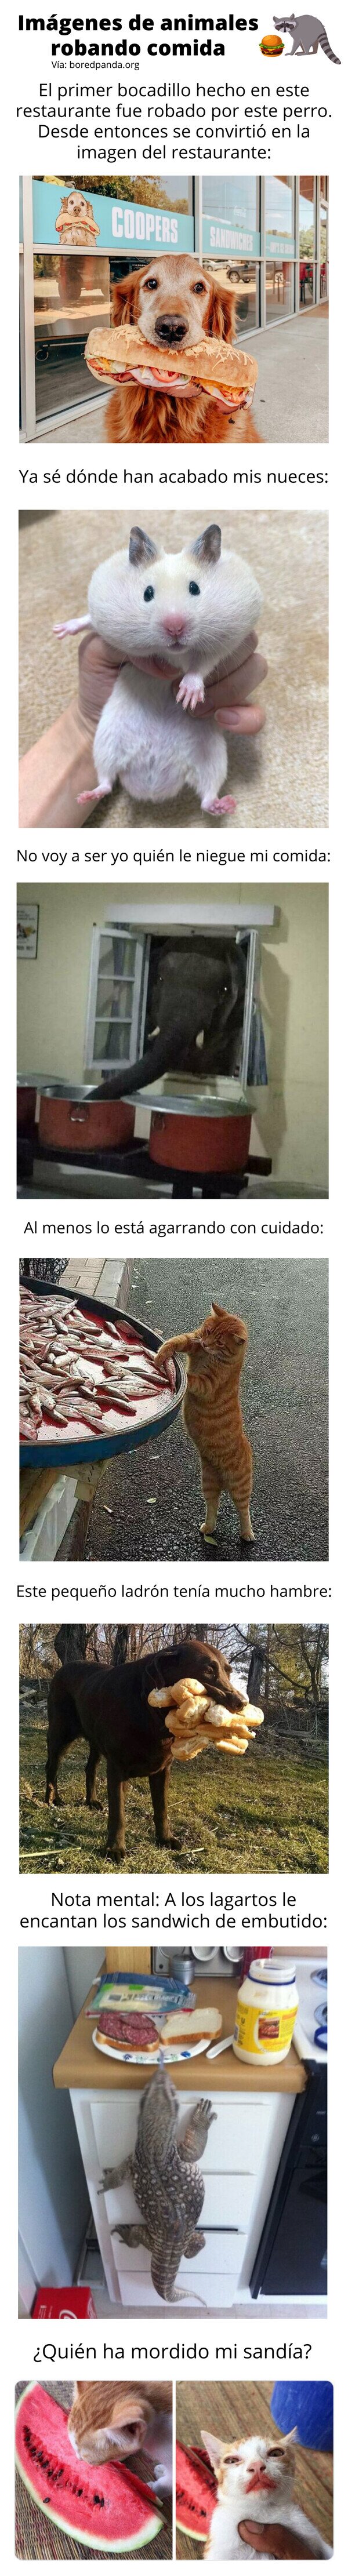 Meme_otros - Imágenes de animales robando comida